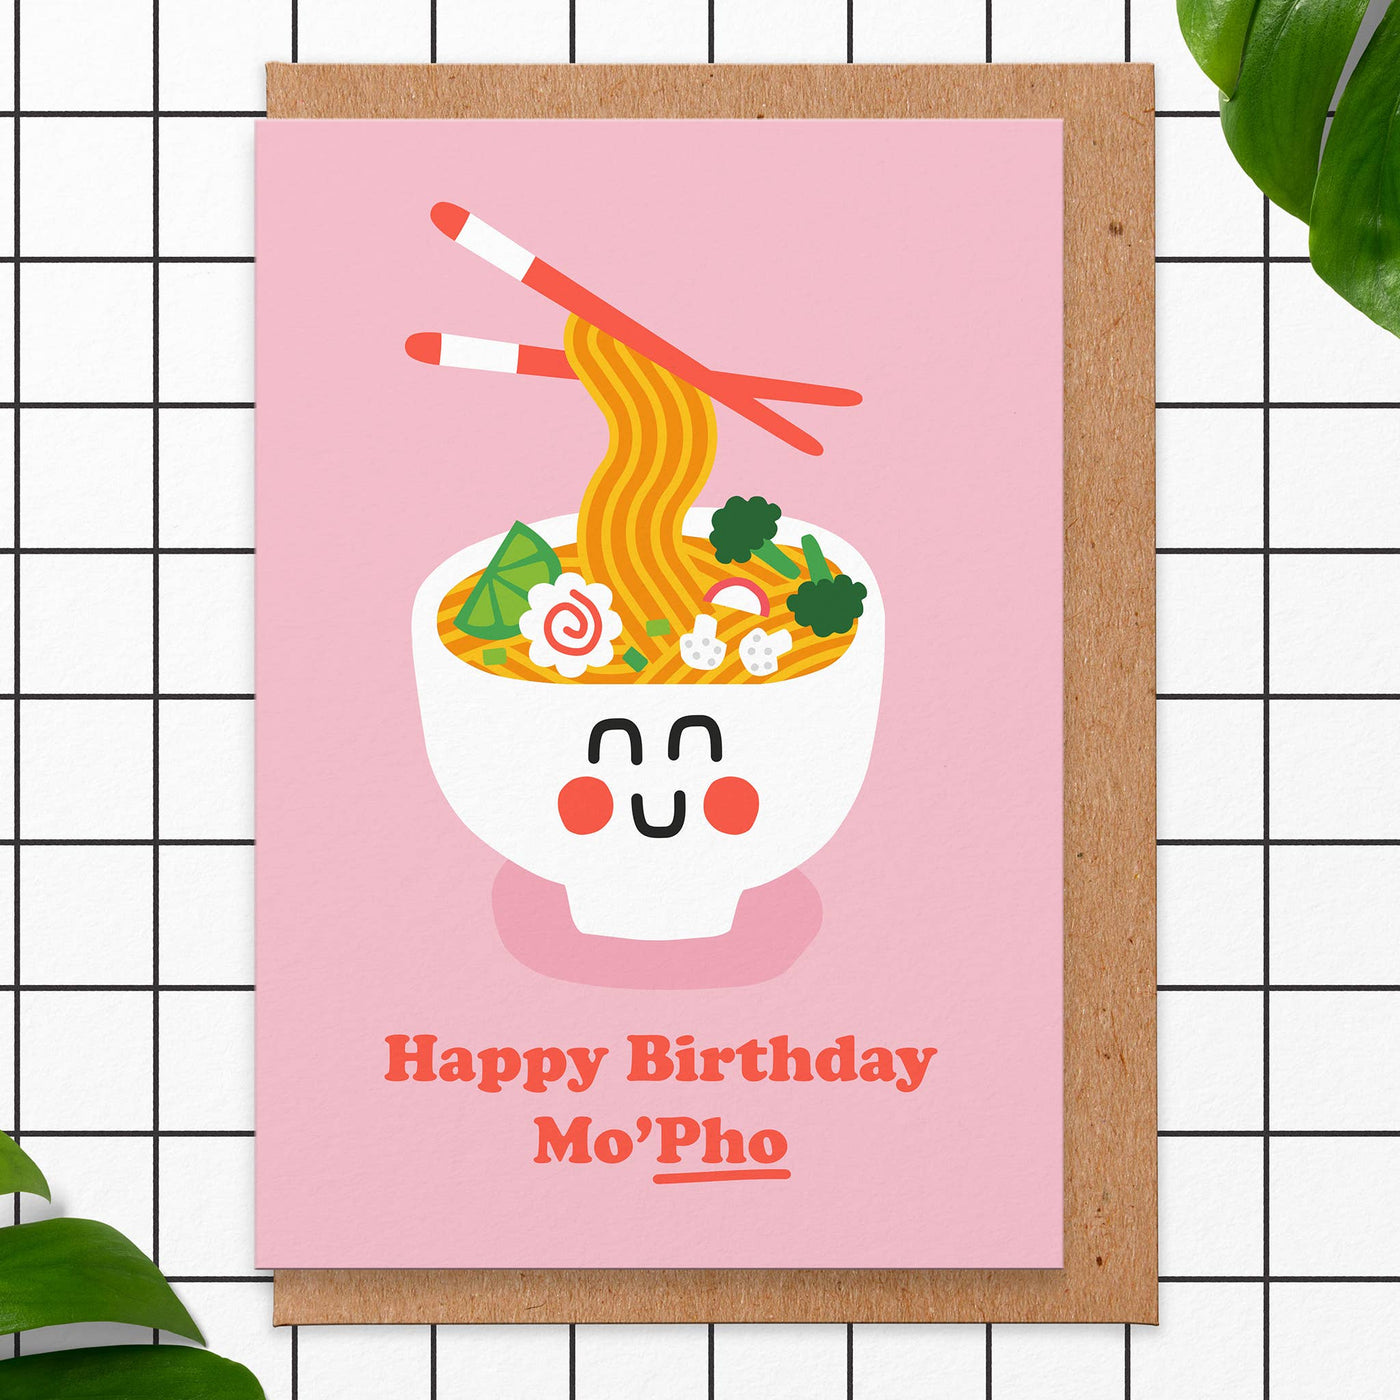 Happy Birthday Mo'pho' Card